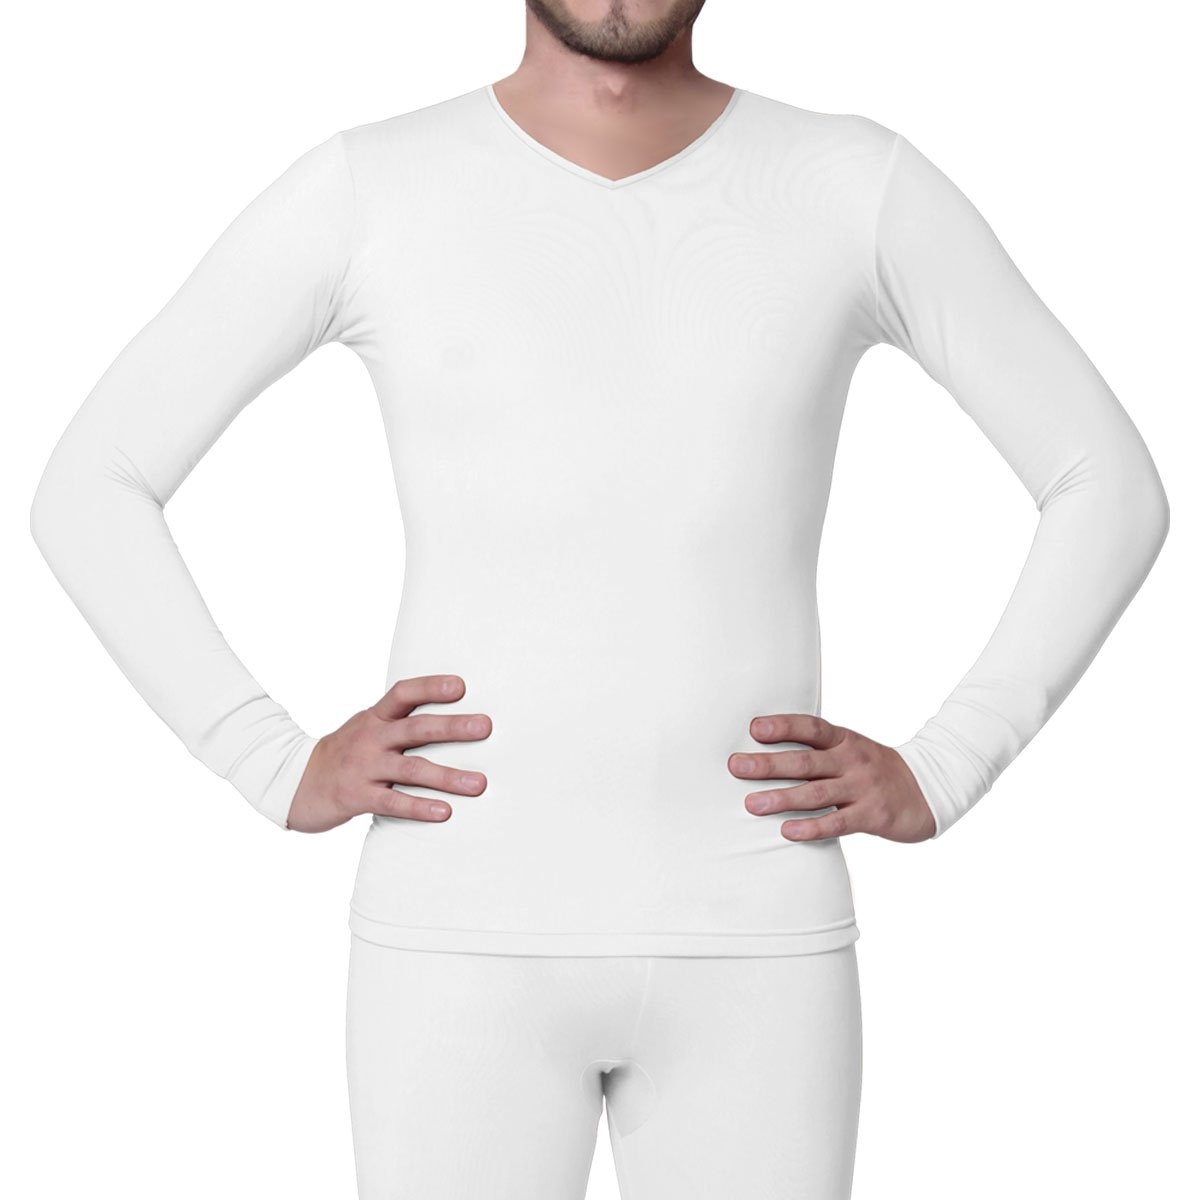 Ropa interior térmica extra cálida de 0.45 tog para hombre, camiseta de  manga larga (XXL, pecho 47-49 pulgadas) (blanco), Blanco